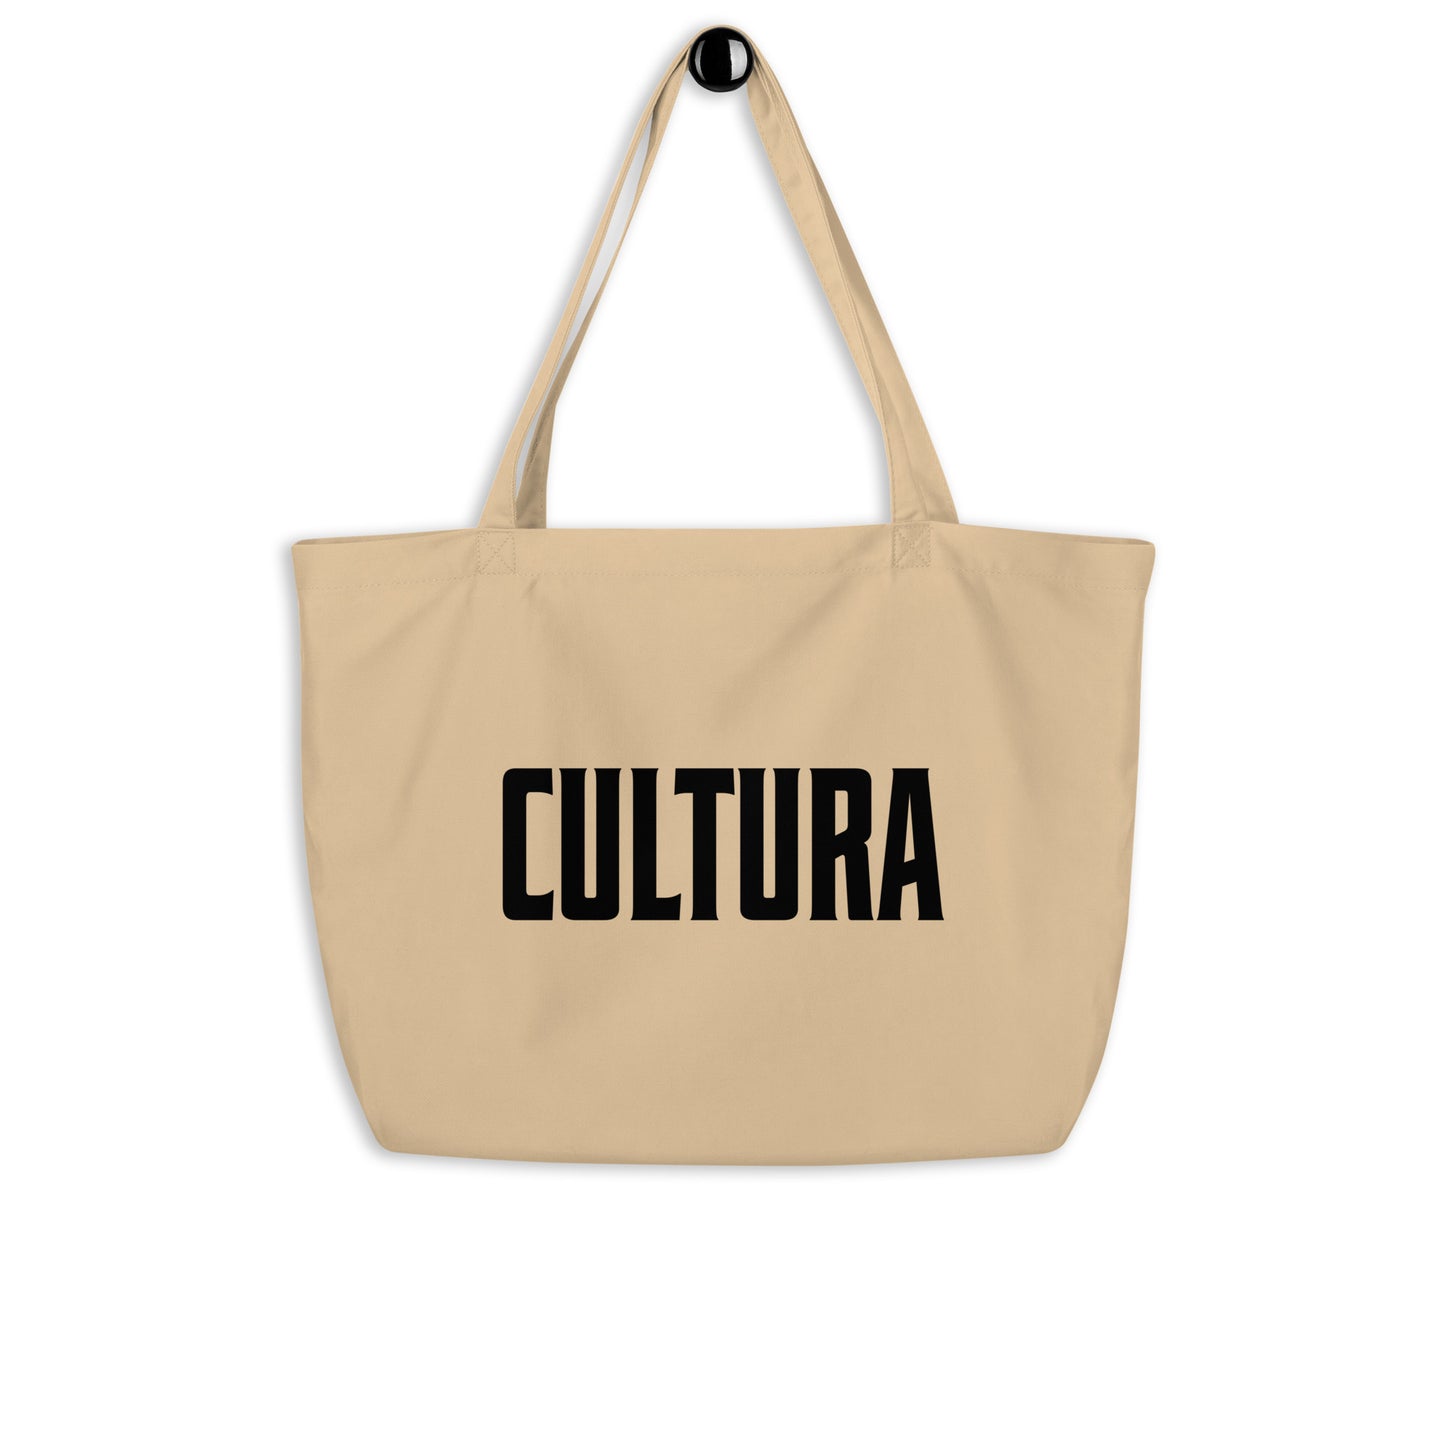 Cultura Large Tote Bag